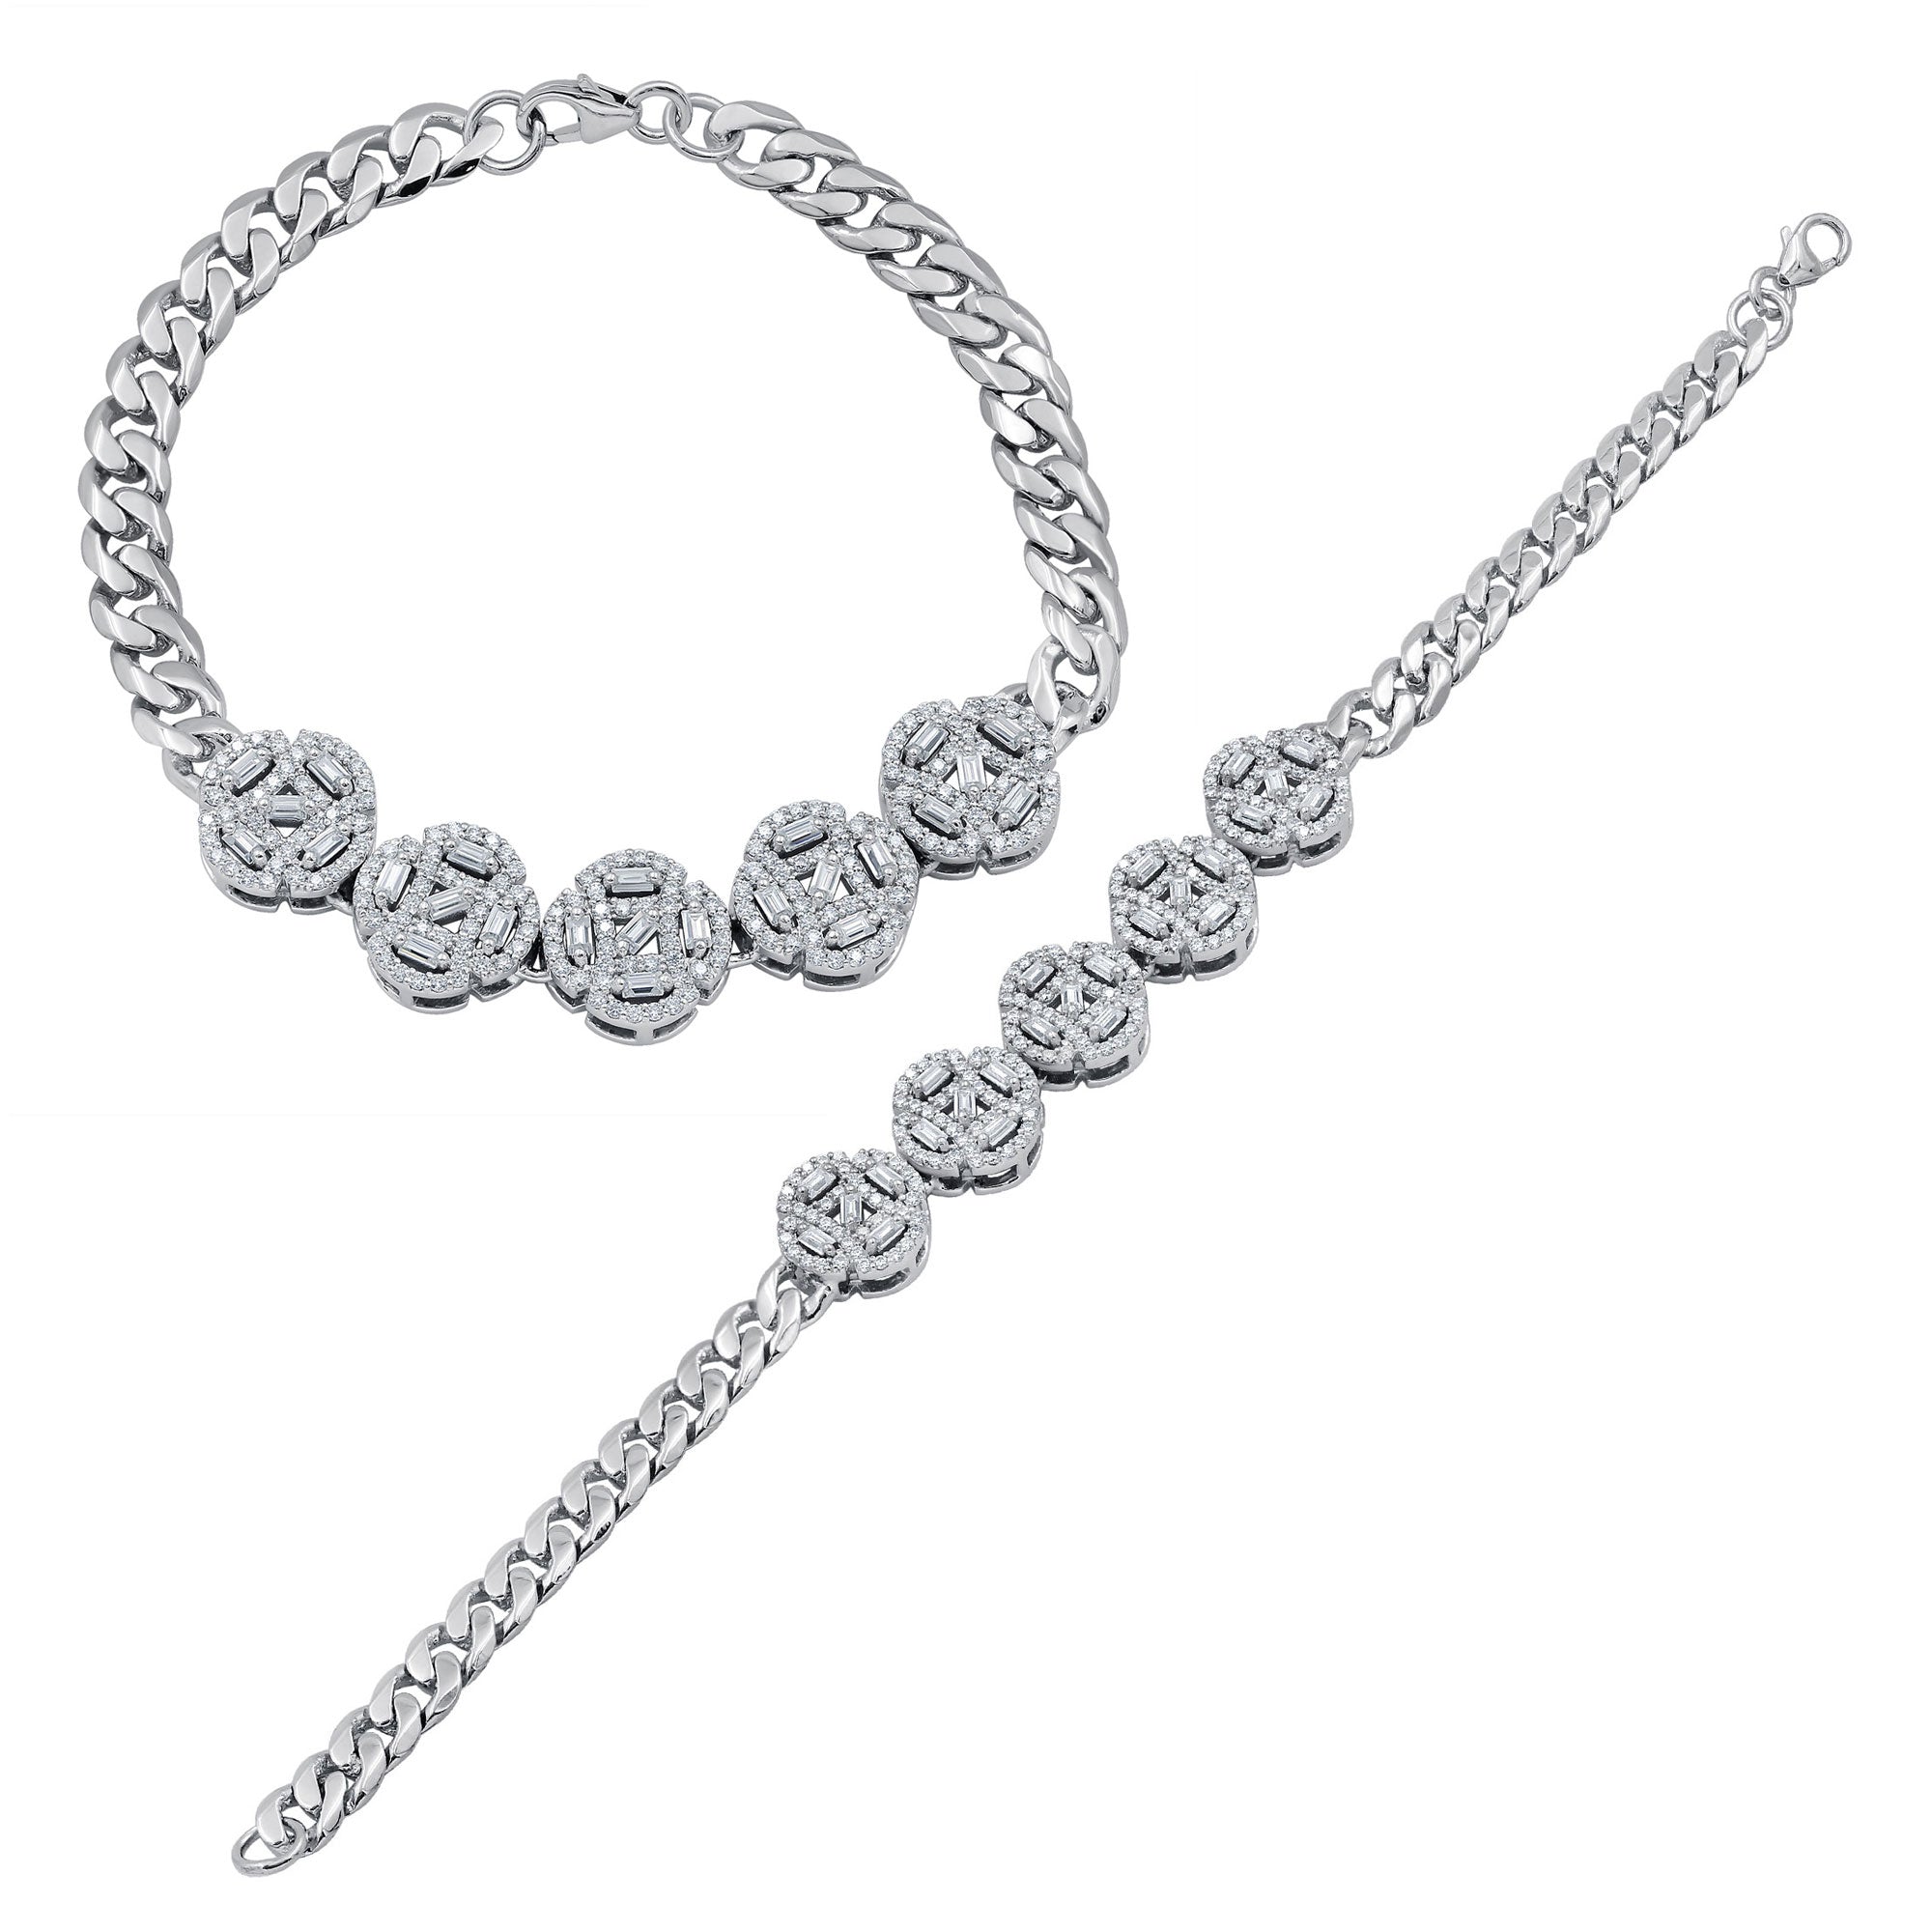 Multi Stone Moissanite Bracelet, Moissanite Synthetic Diamond Bracelet For Women, Iced Out Prong Curb Link Bracelet